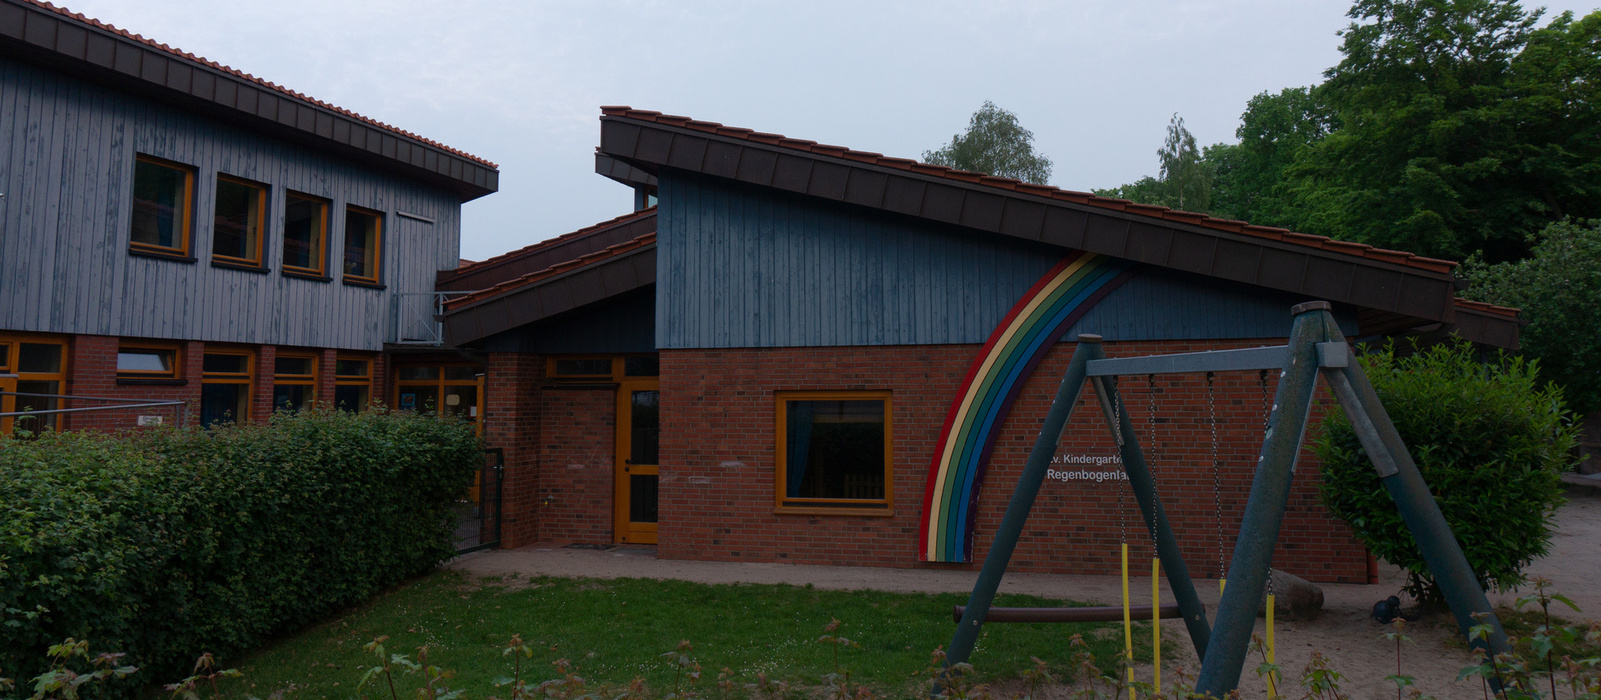 Der Regenbogen-Kindergarten